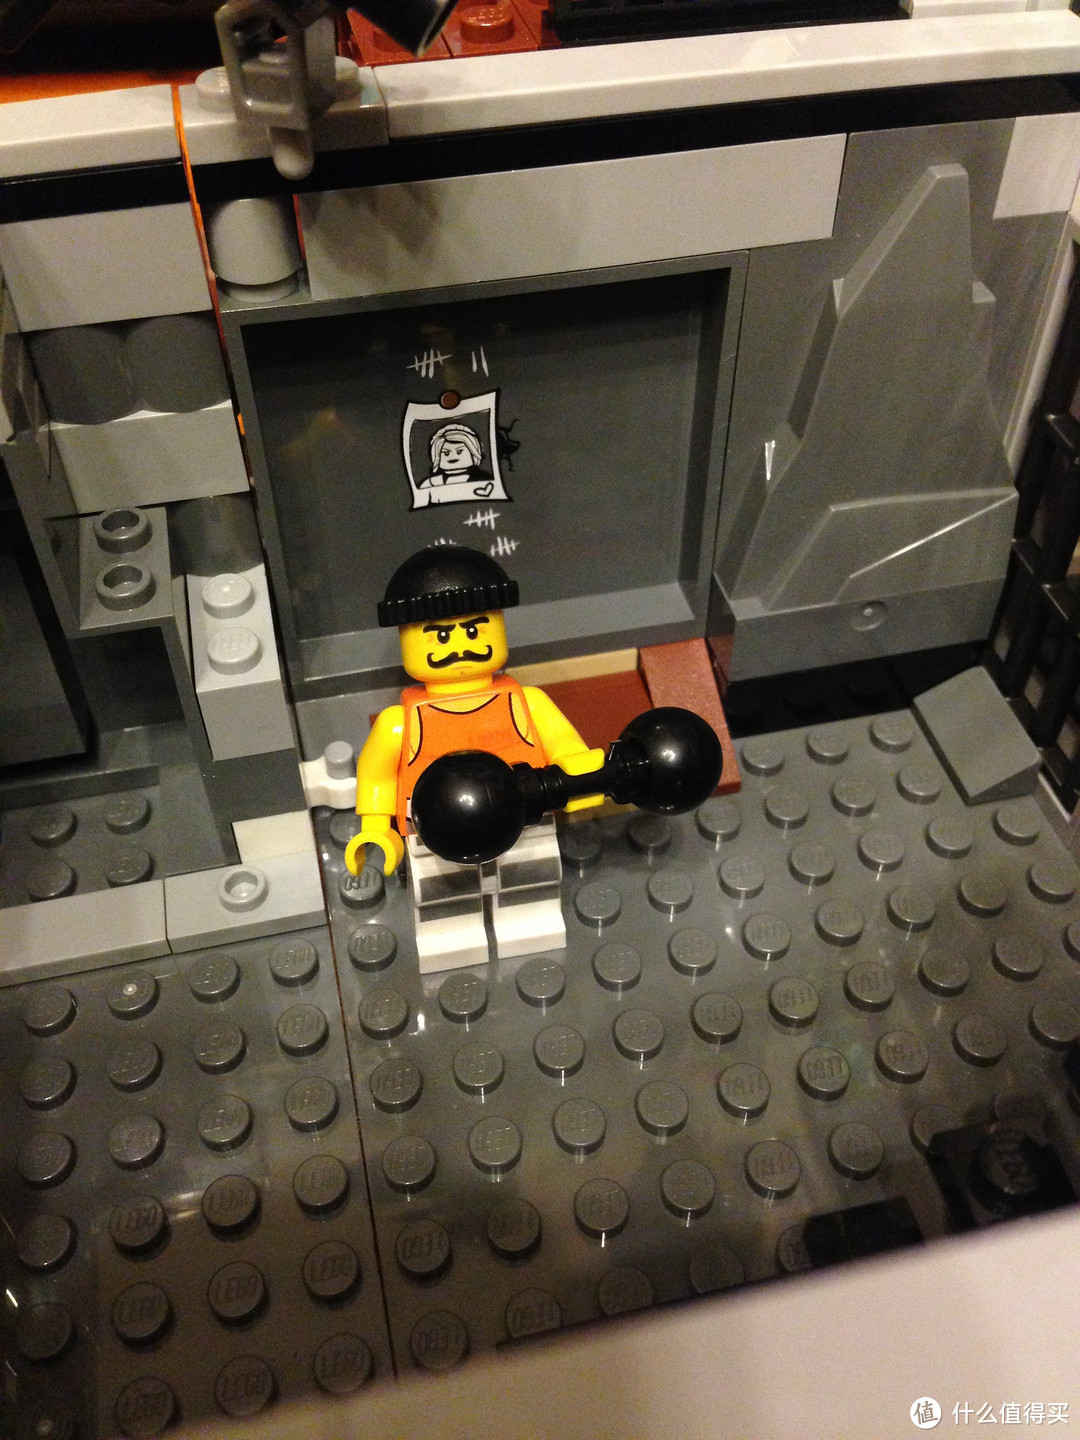 LEGO 乐高 城市系列 60130  监狱岛 开箱